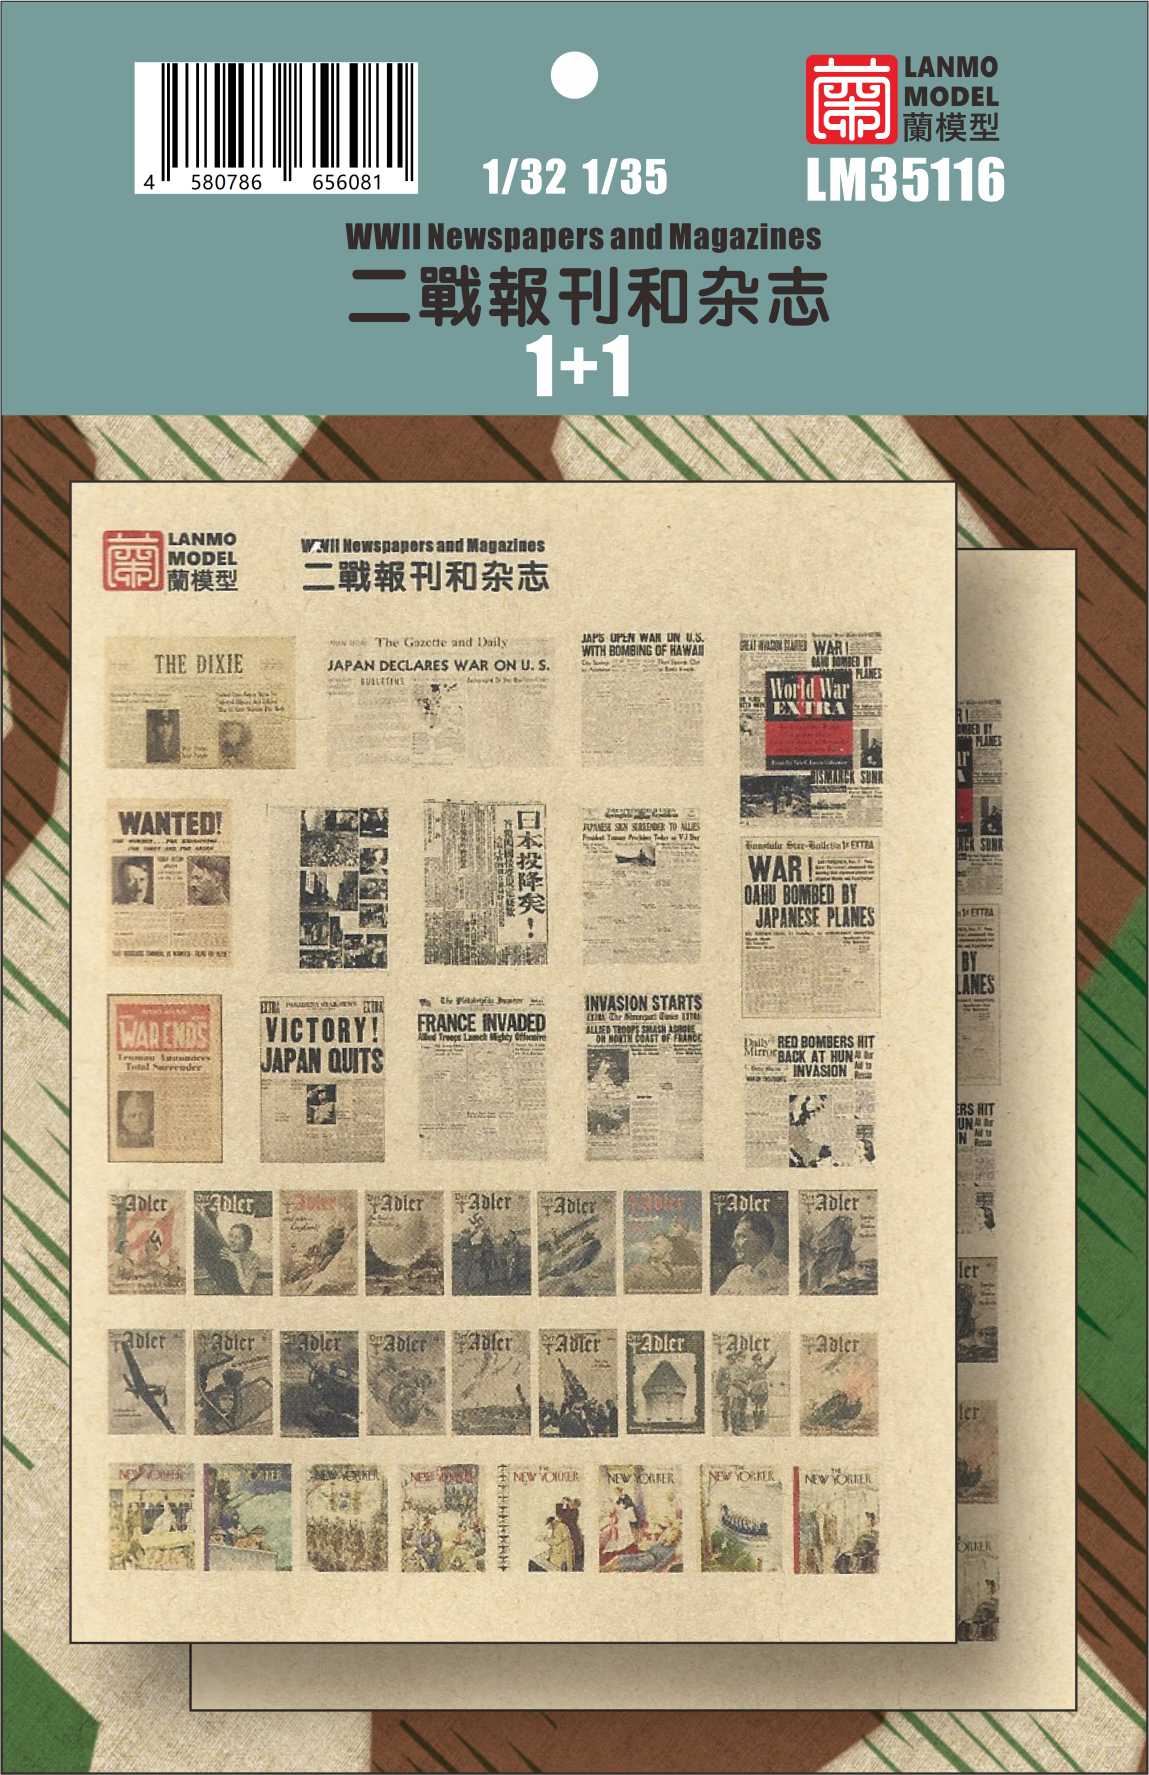 LM35116 1/35 二战报刊和杂志 1+1